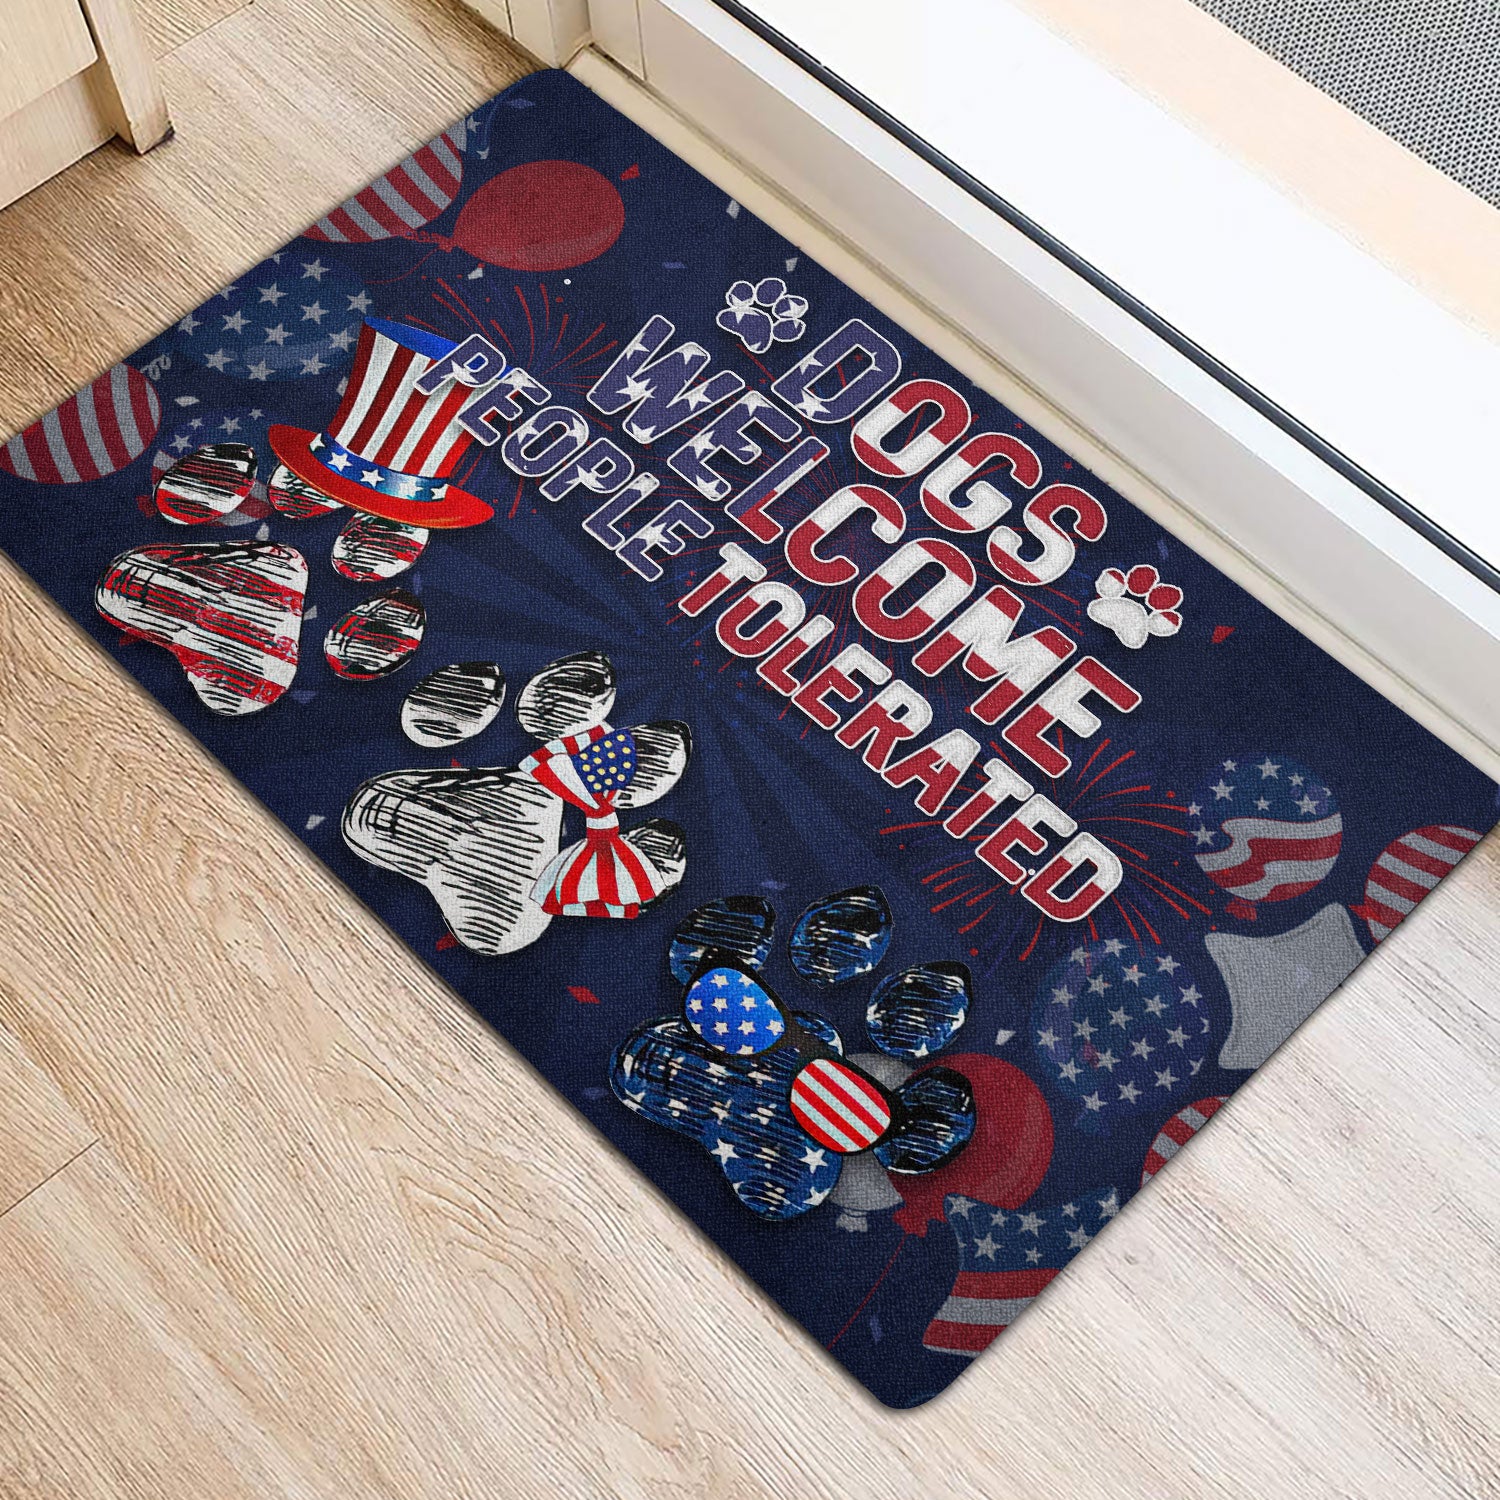 Ohaprints-Doormat-Outdoor-Indoor-Dogs-Welcome-People-Tolerated-America-Patriotic-4Th-Of-July-Rubber-Door-Mat-1558-